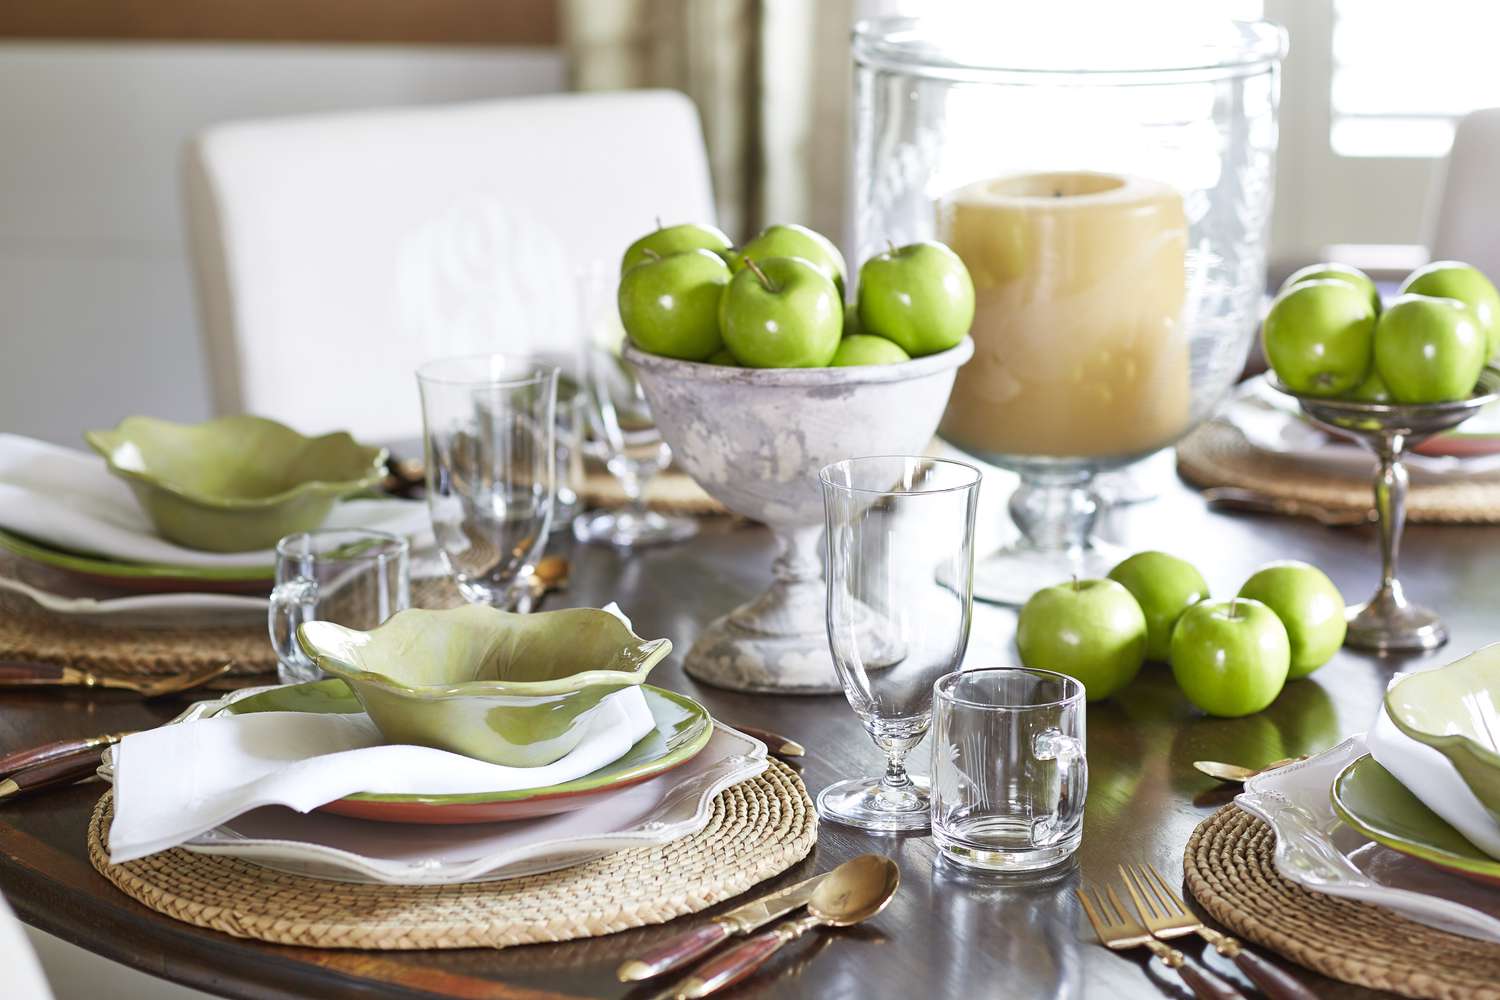 Grüne Tischdekoration mit grünen Äpfeln und Rattan-Tischsets.